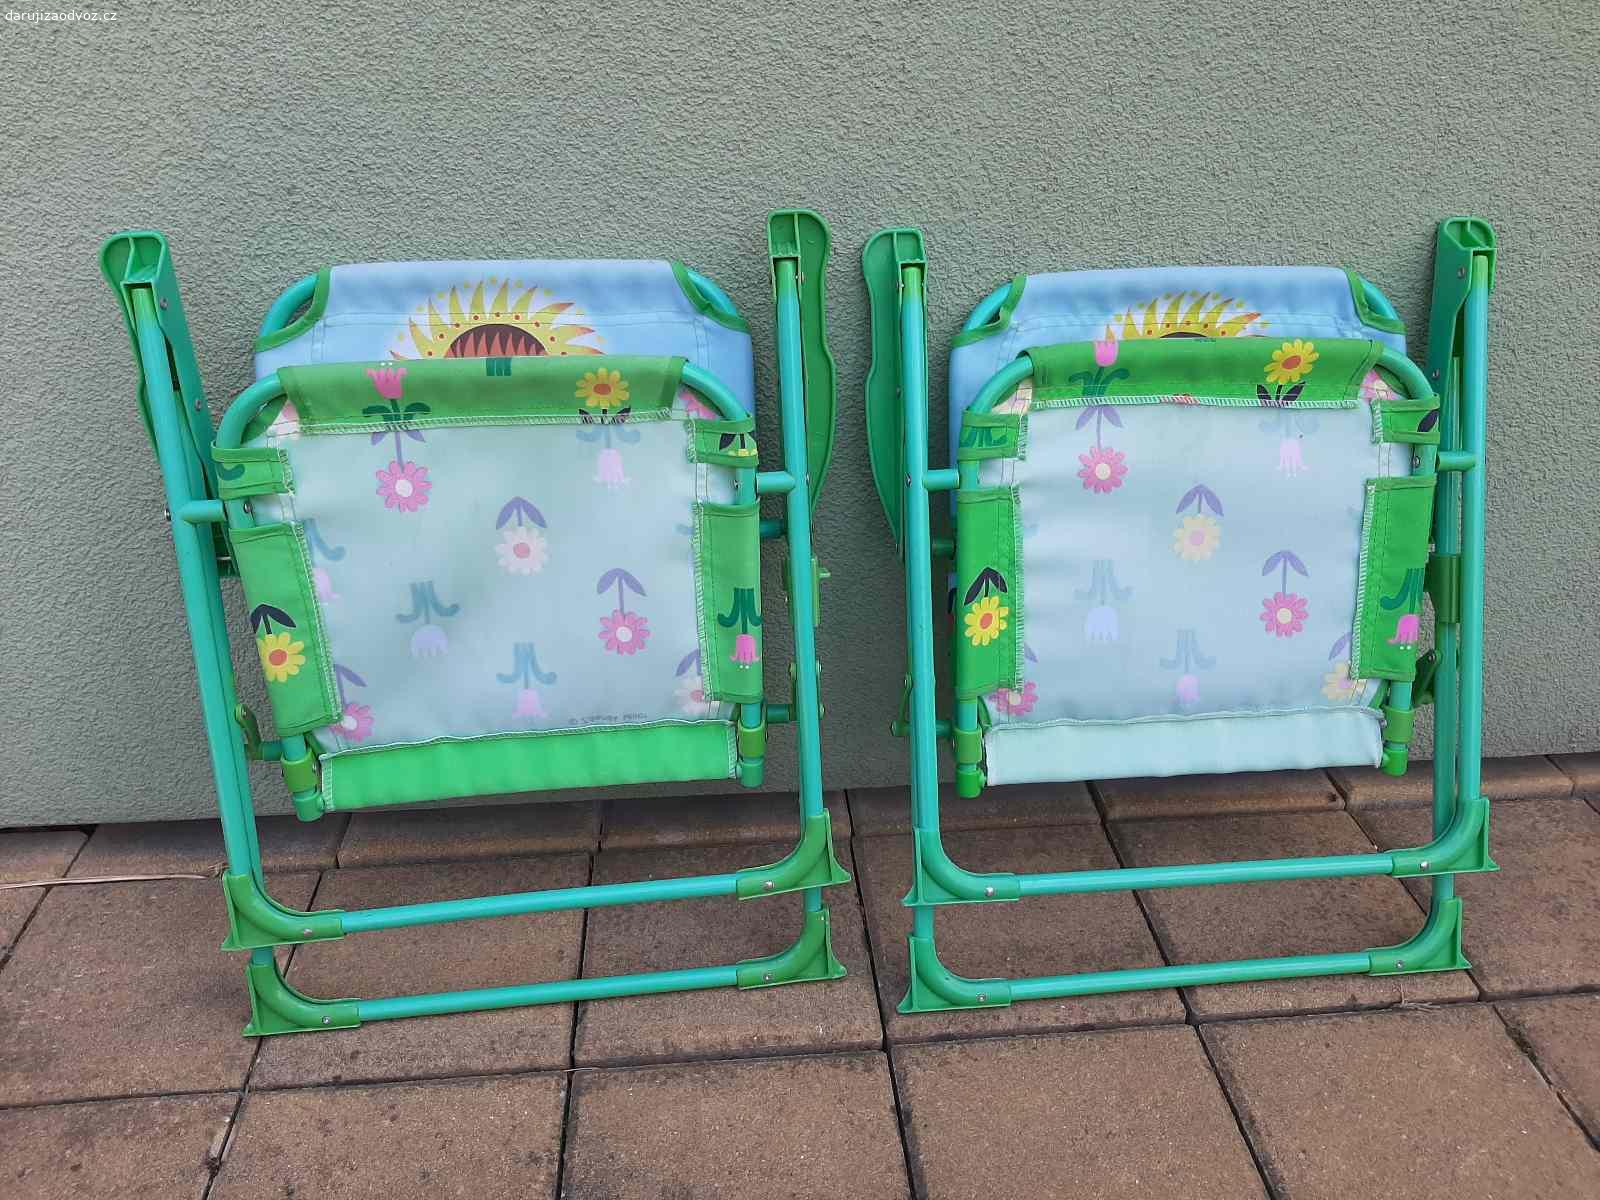 2 dětské skládací židličky. Židličky pro nejmenší. 
Starší,  ale funkční